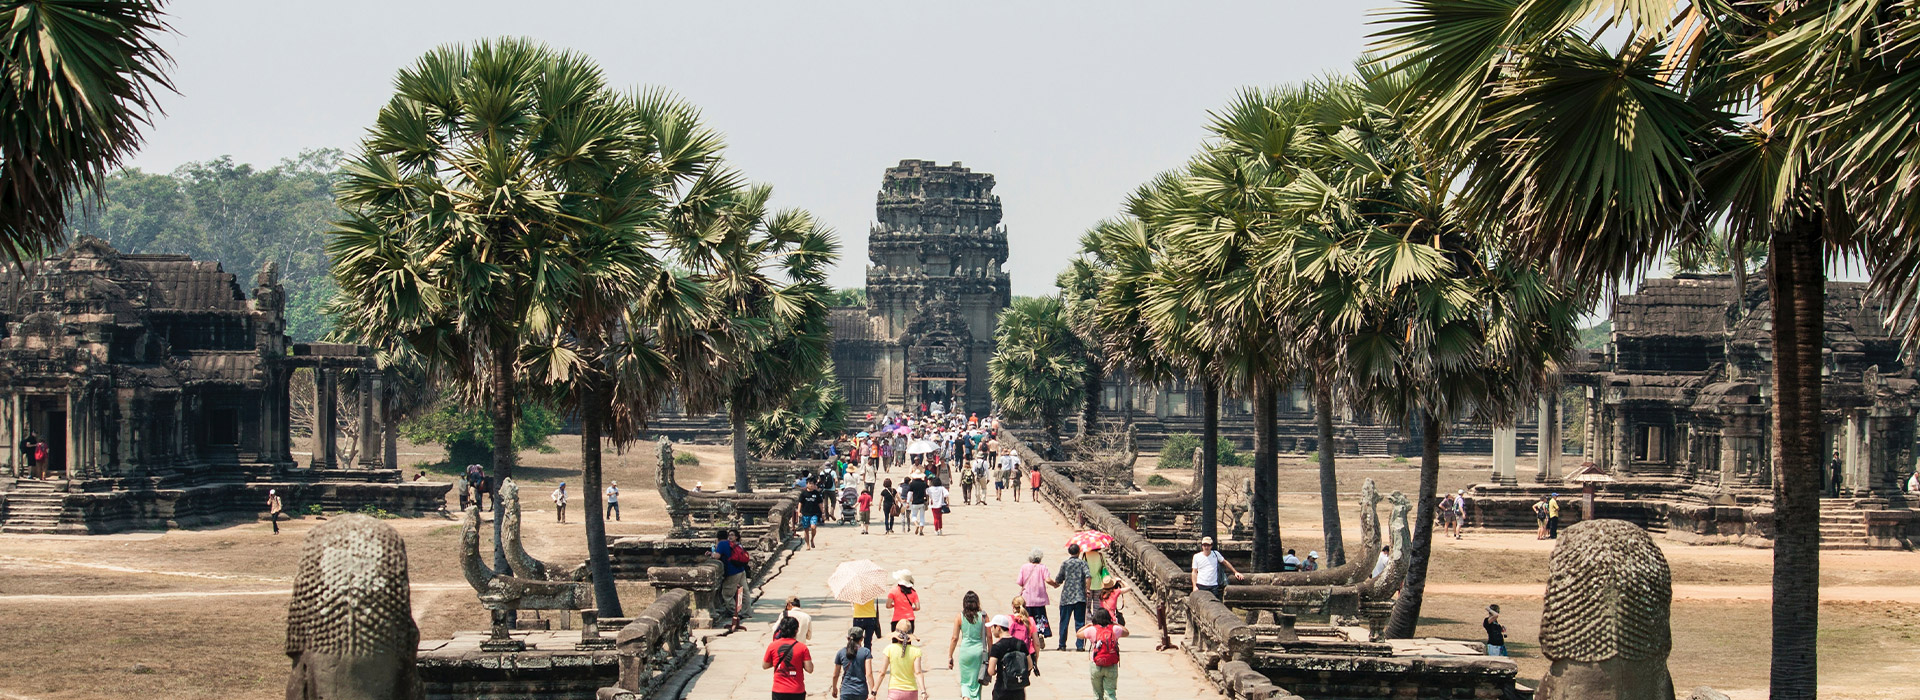 Reisen nach Kambodscha - Individuelle Reisen nach Kambodscha - Harry Kolb AG - Tourismus